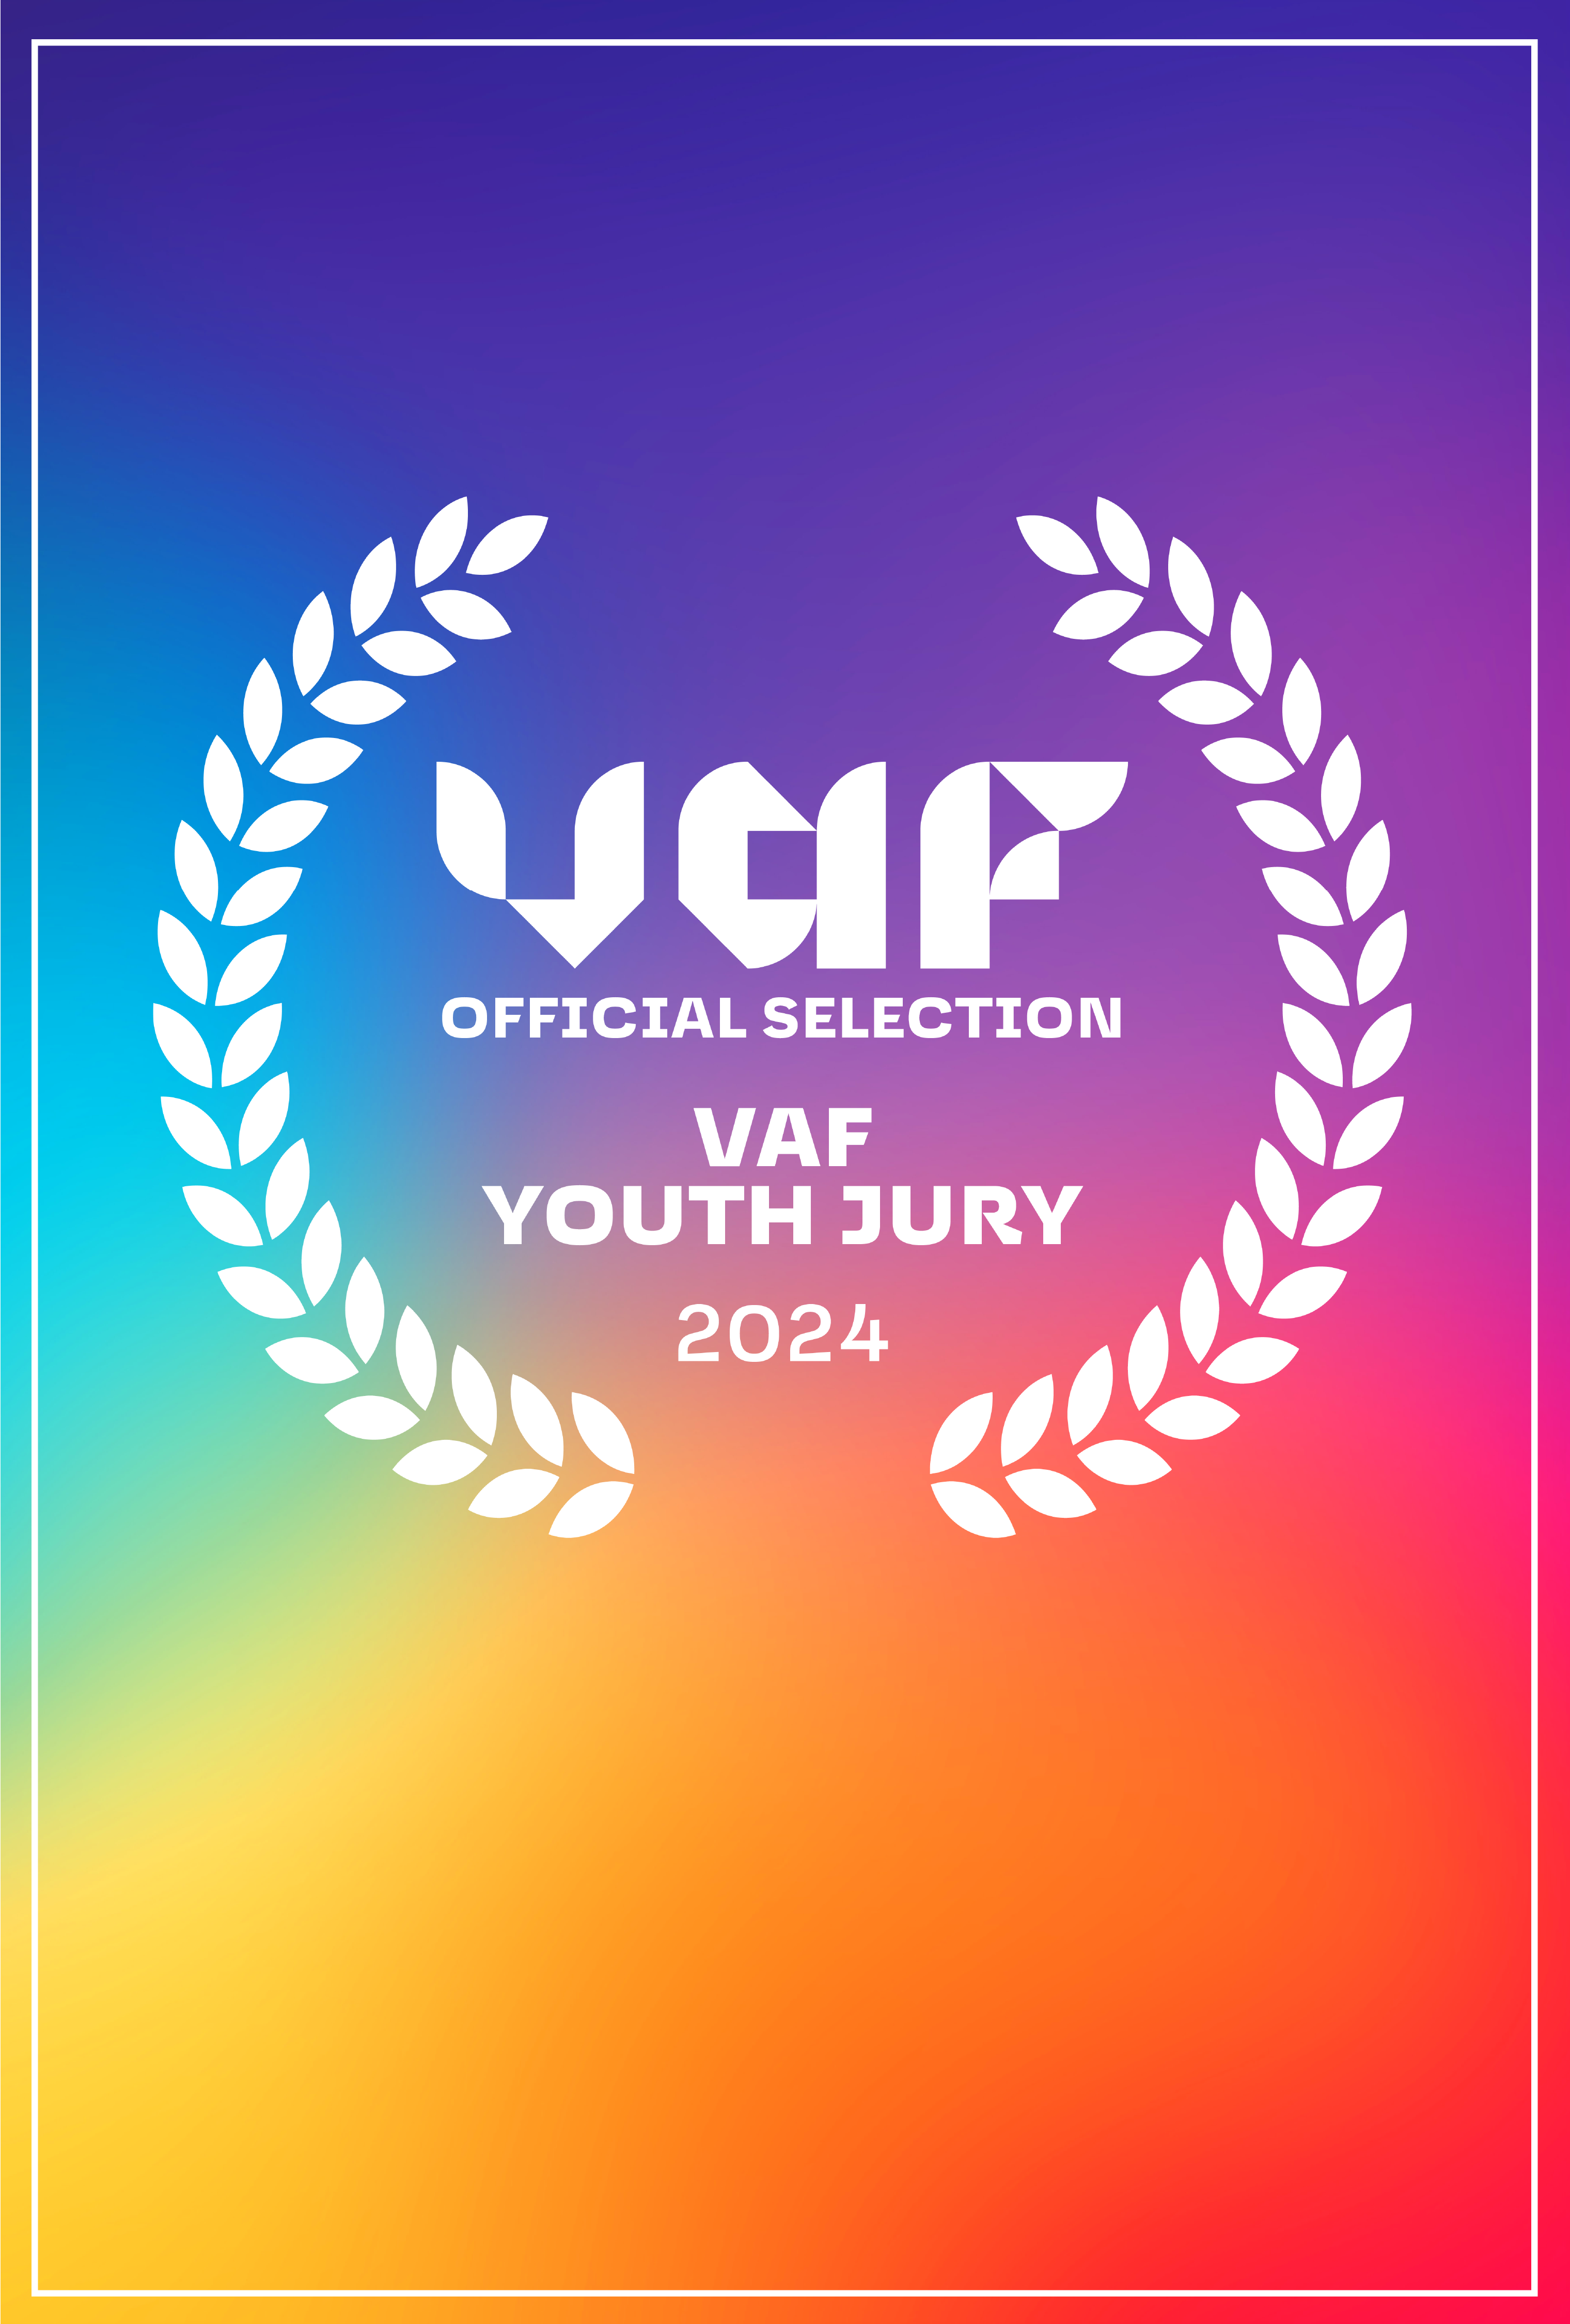 Laurels af VAF Youth Jury 2024 - på en farverig regnbue baggrund.